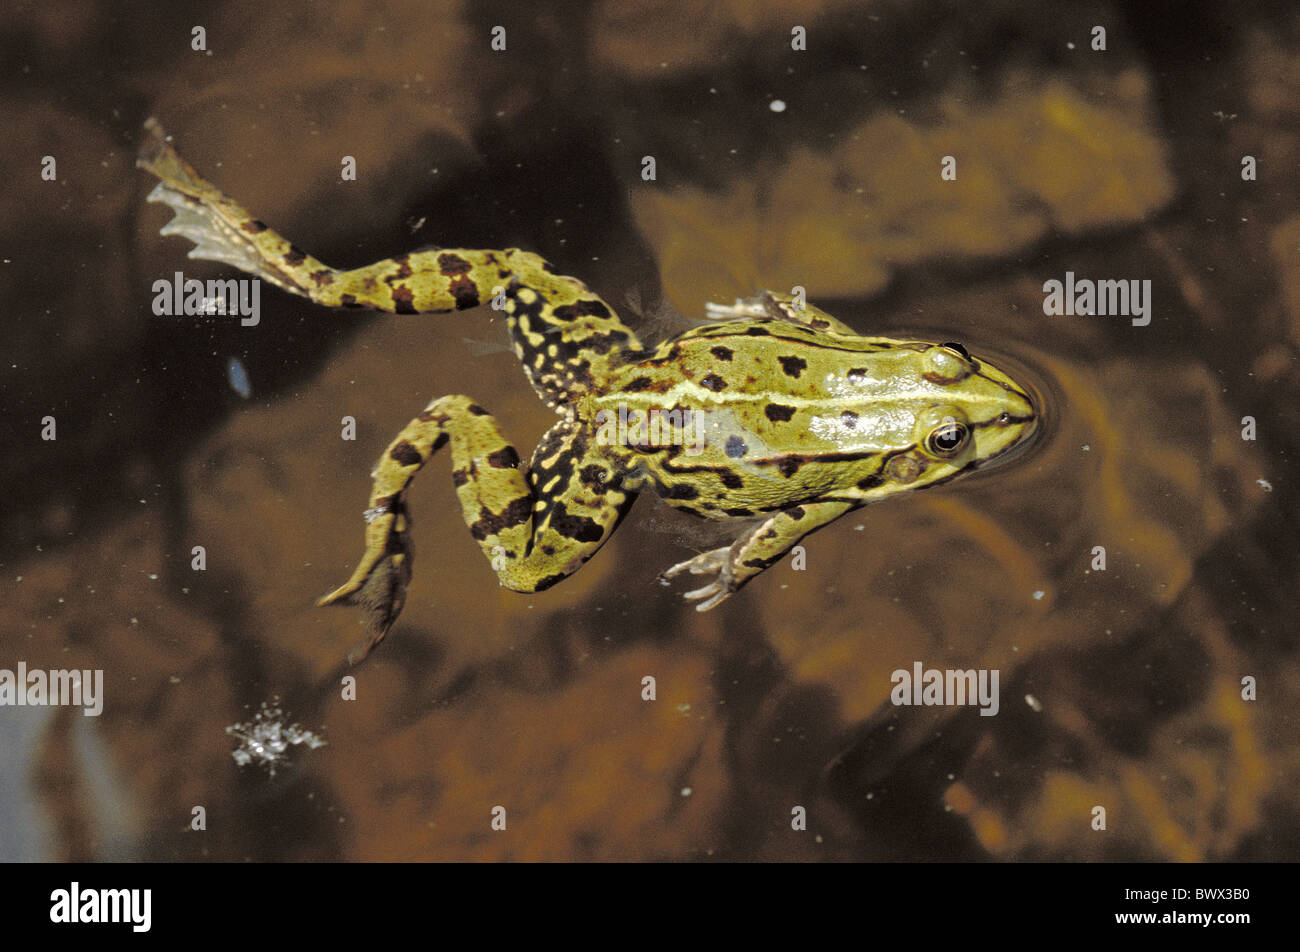 Laub Frosch grün schwarz gesprenkelt fleckige Sprung von oben Rücken Frosch  Stockfotografie - Alamy